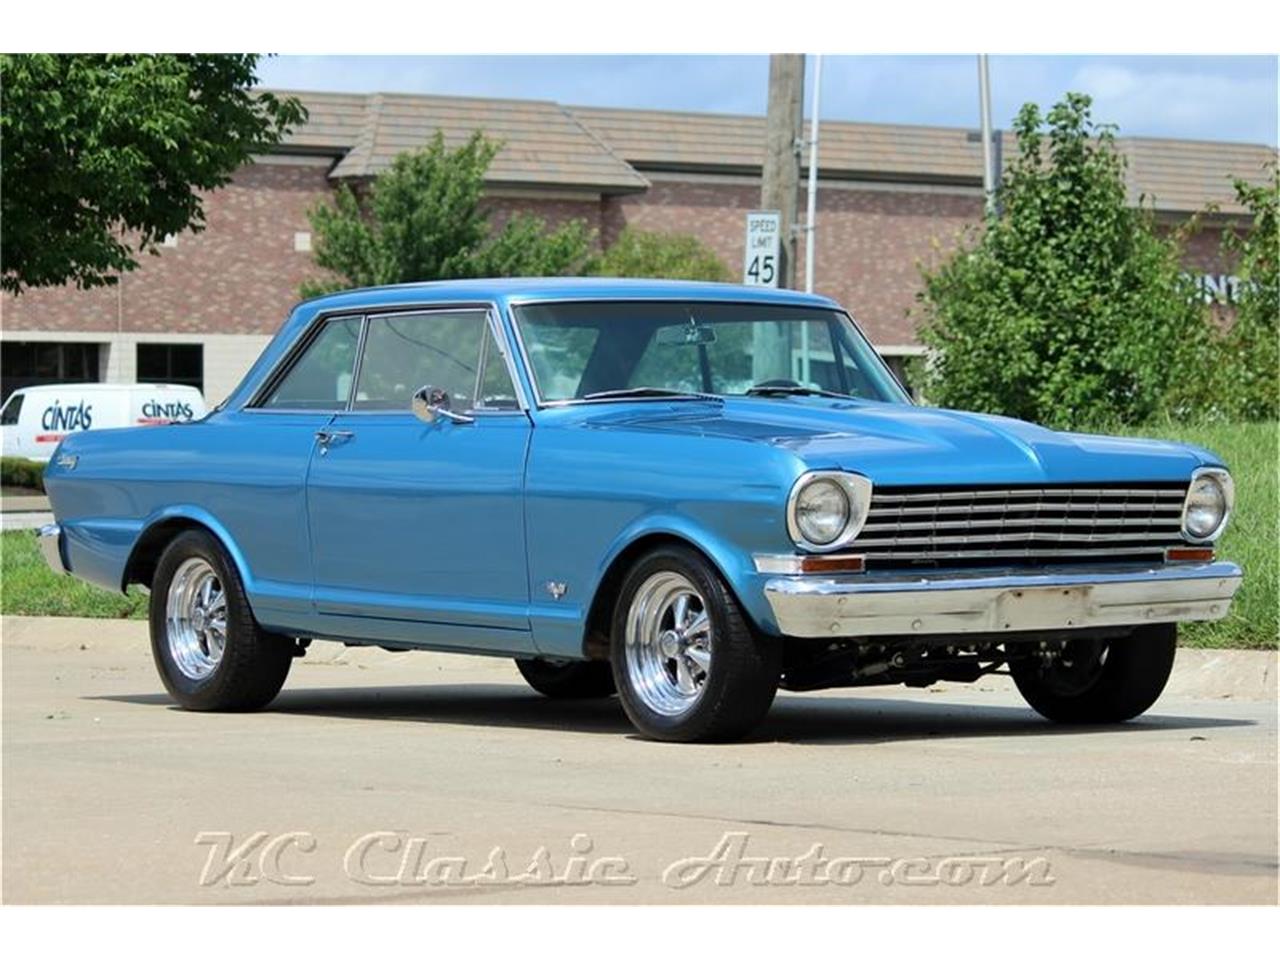 For Sale: 1962 Chevrolet Nova in Lenexa, Kansas.